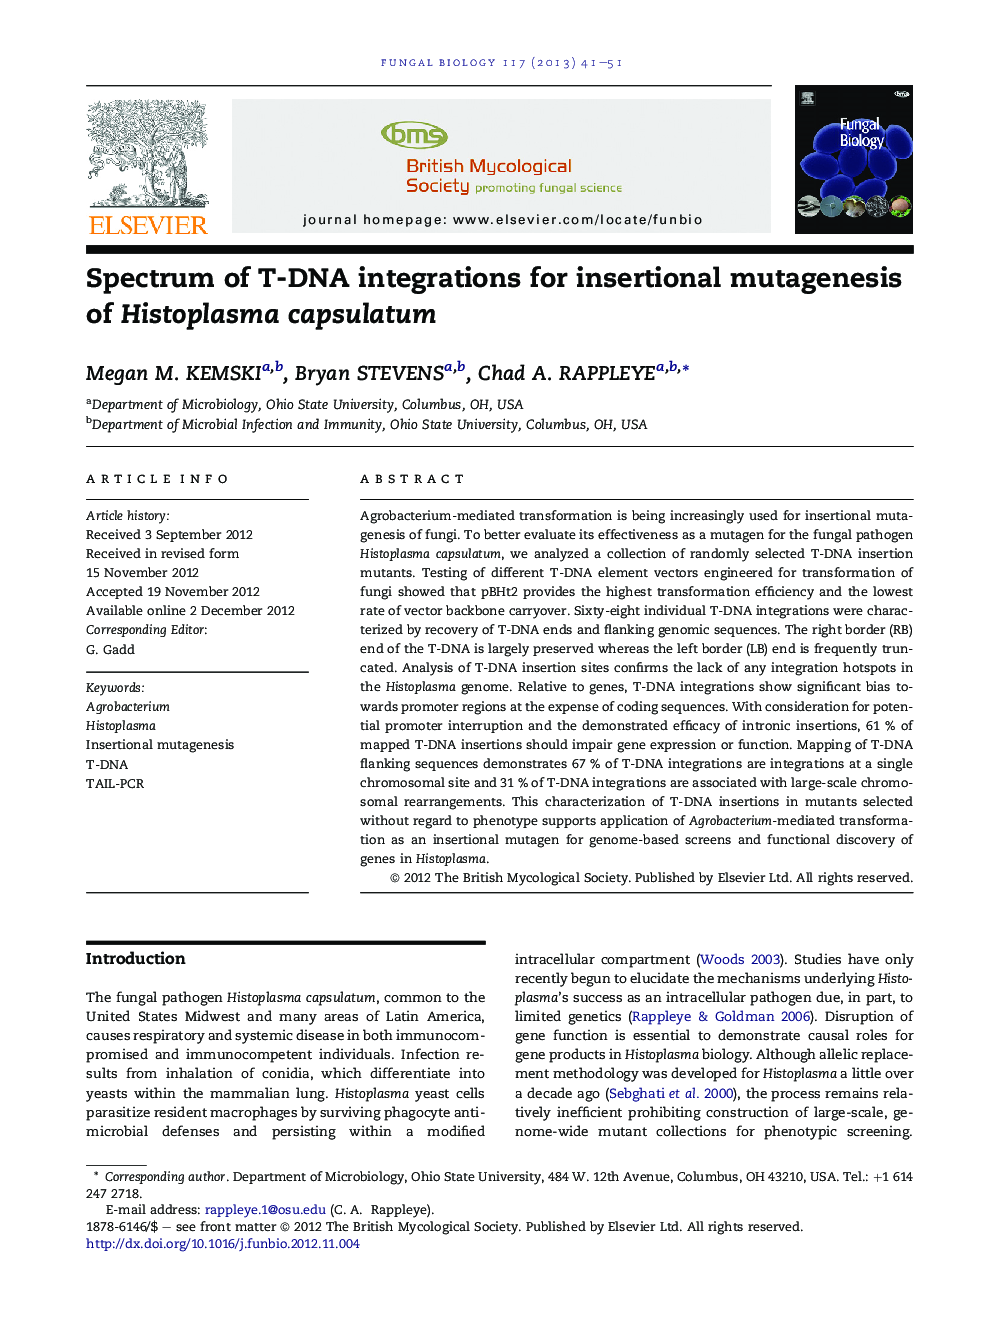 Spectrum of T-DNA integrations for insertional mutagenesis of Histoplasma capsulatum